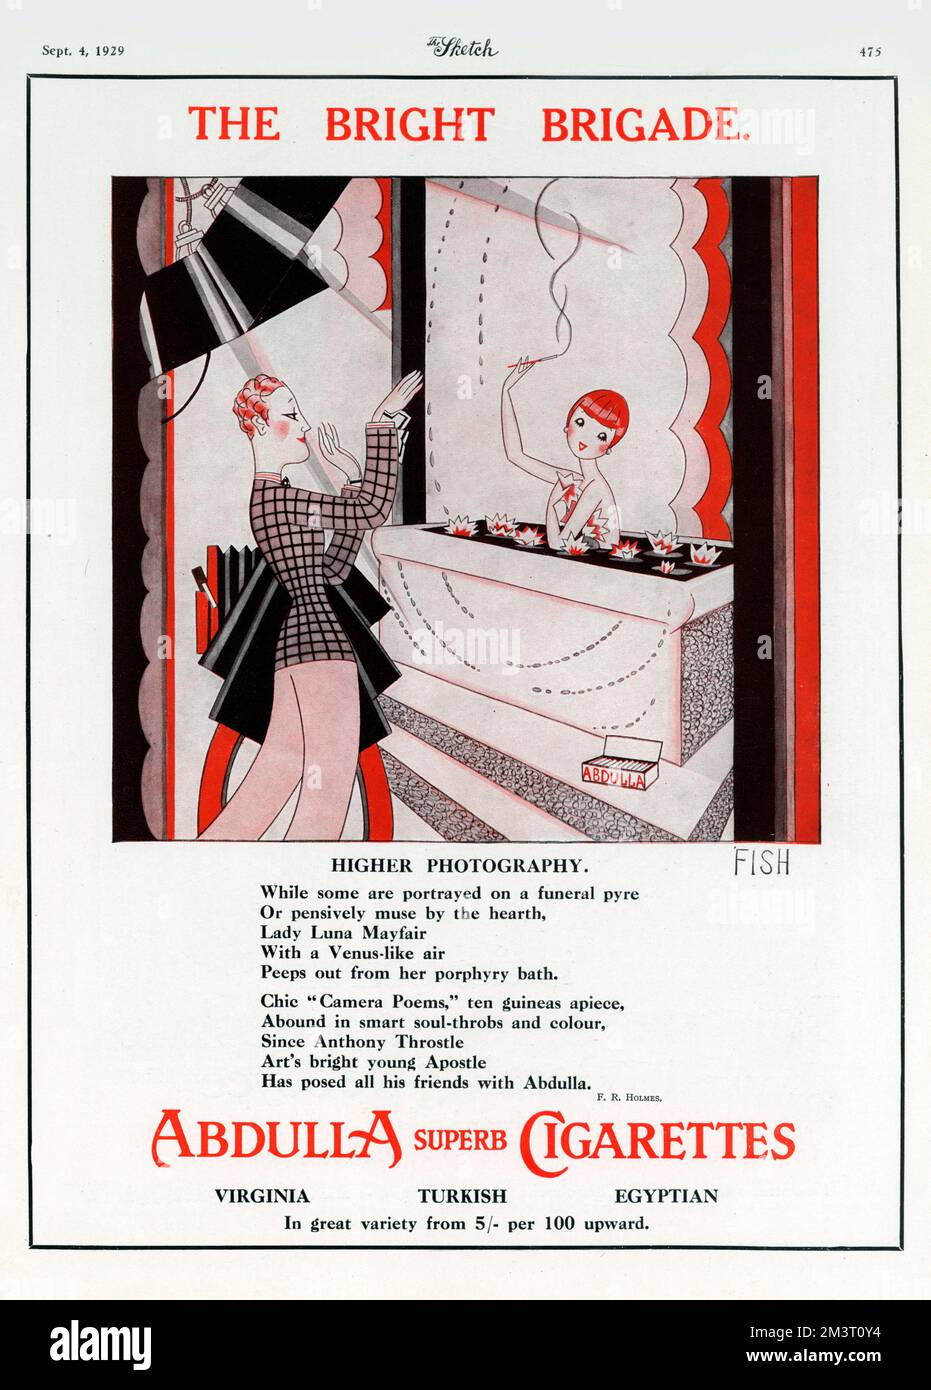 Illustration par Anne Harriet ('Annie') Fish (1890-1964) pour une publicité sur les cigarettes Abdulla - 'Brigade lumineuse' - Photographie supérieure. Banque D'Images